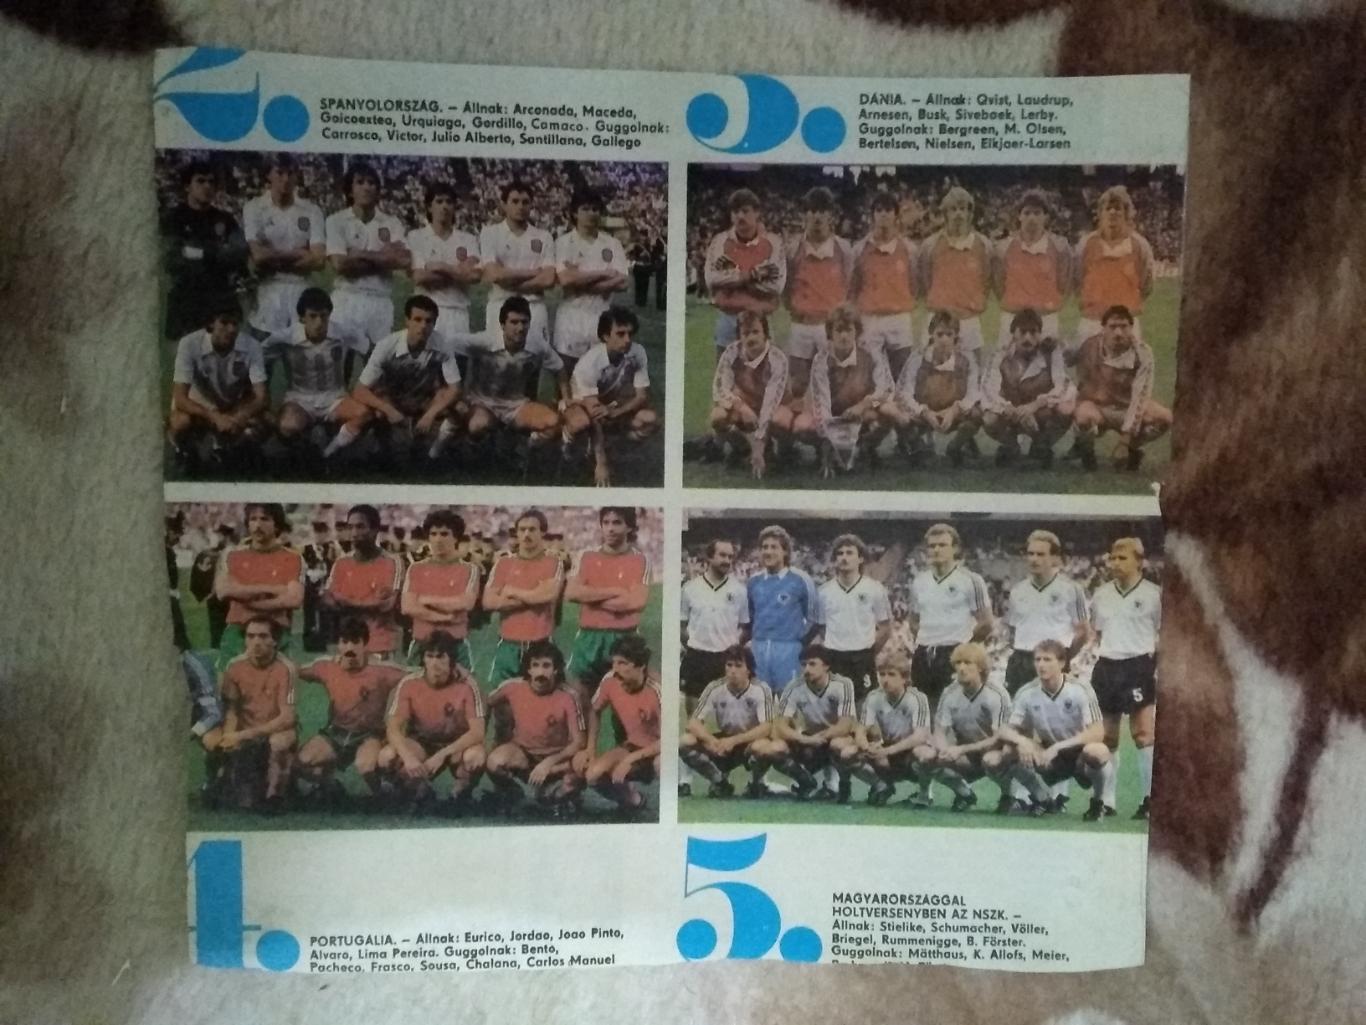 Фото.Футбол.Чемпионат Европы 1984.Испания,Португалия, Дания,ФРГ.Кепеш спорт.